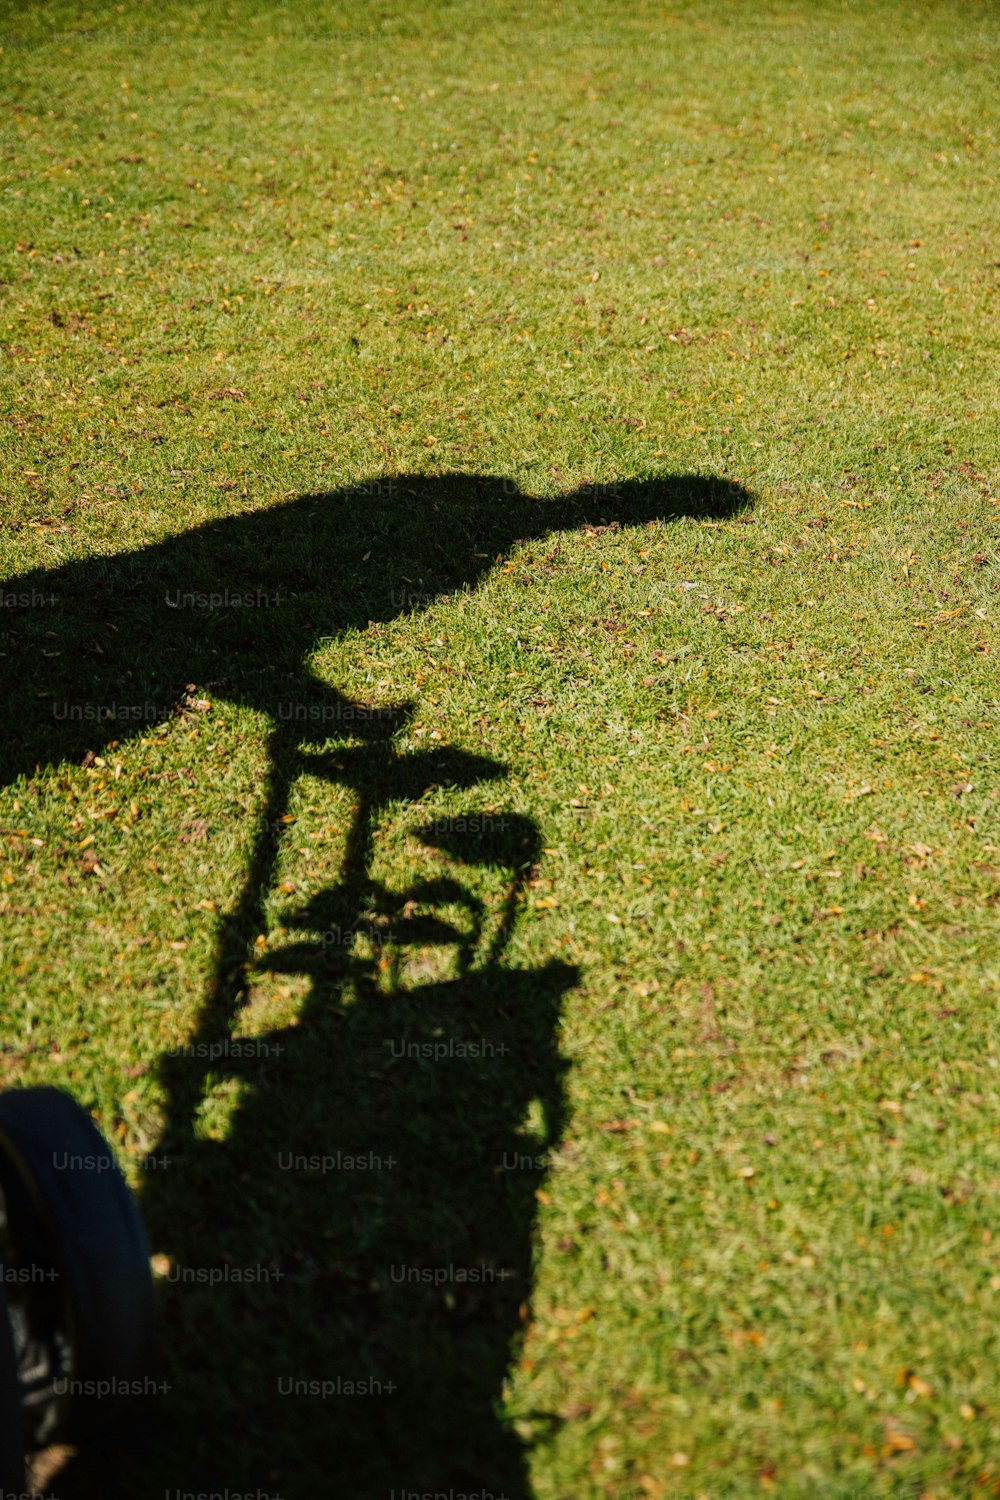 una sombra de una persona montando en bicicleta en la hierba